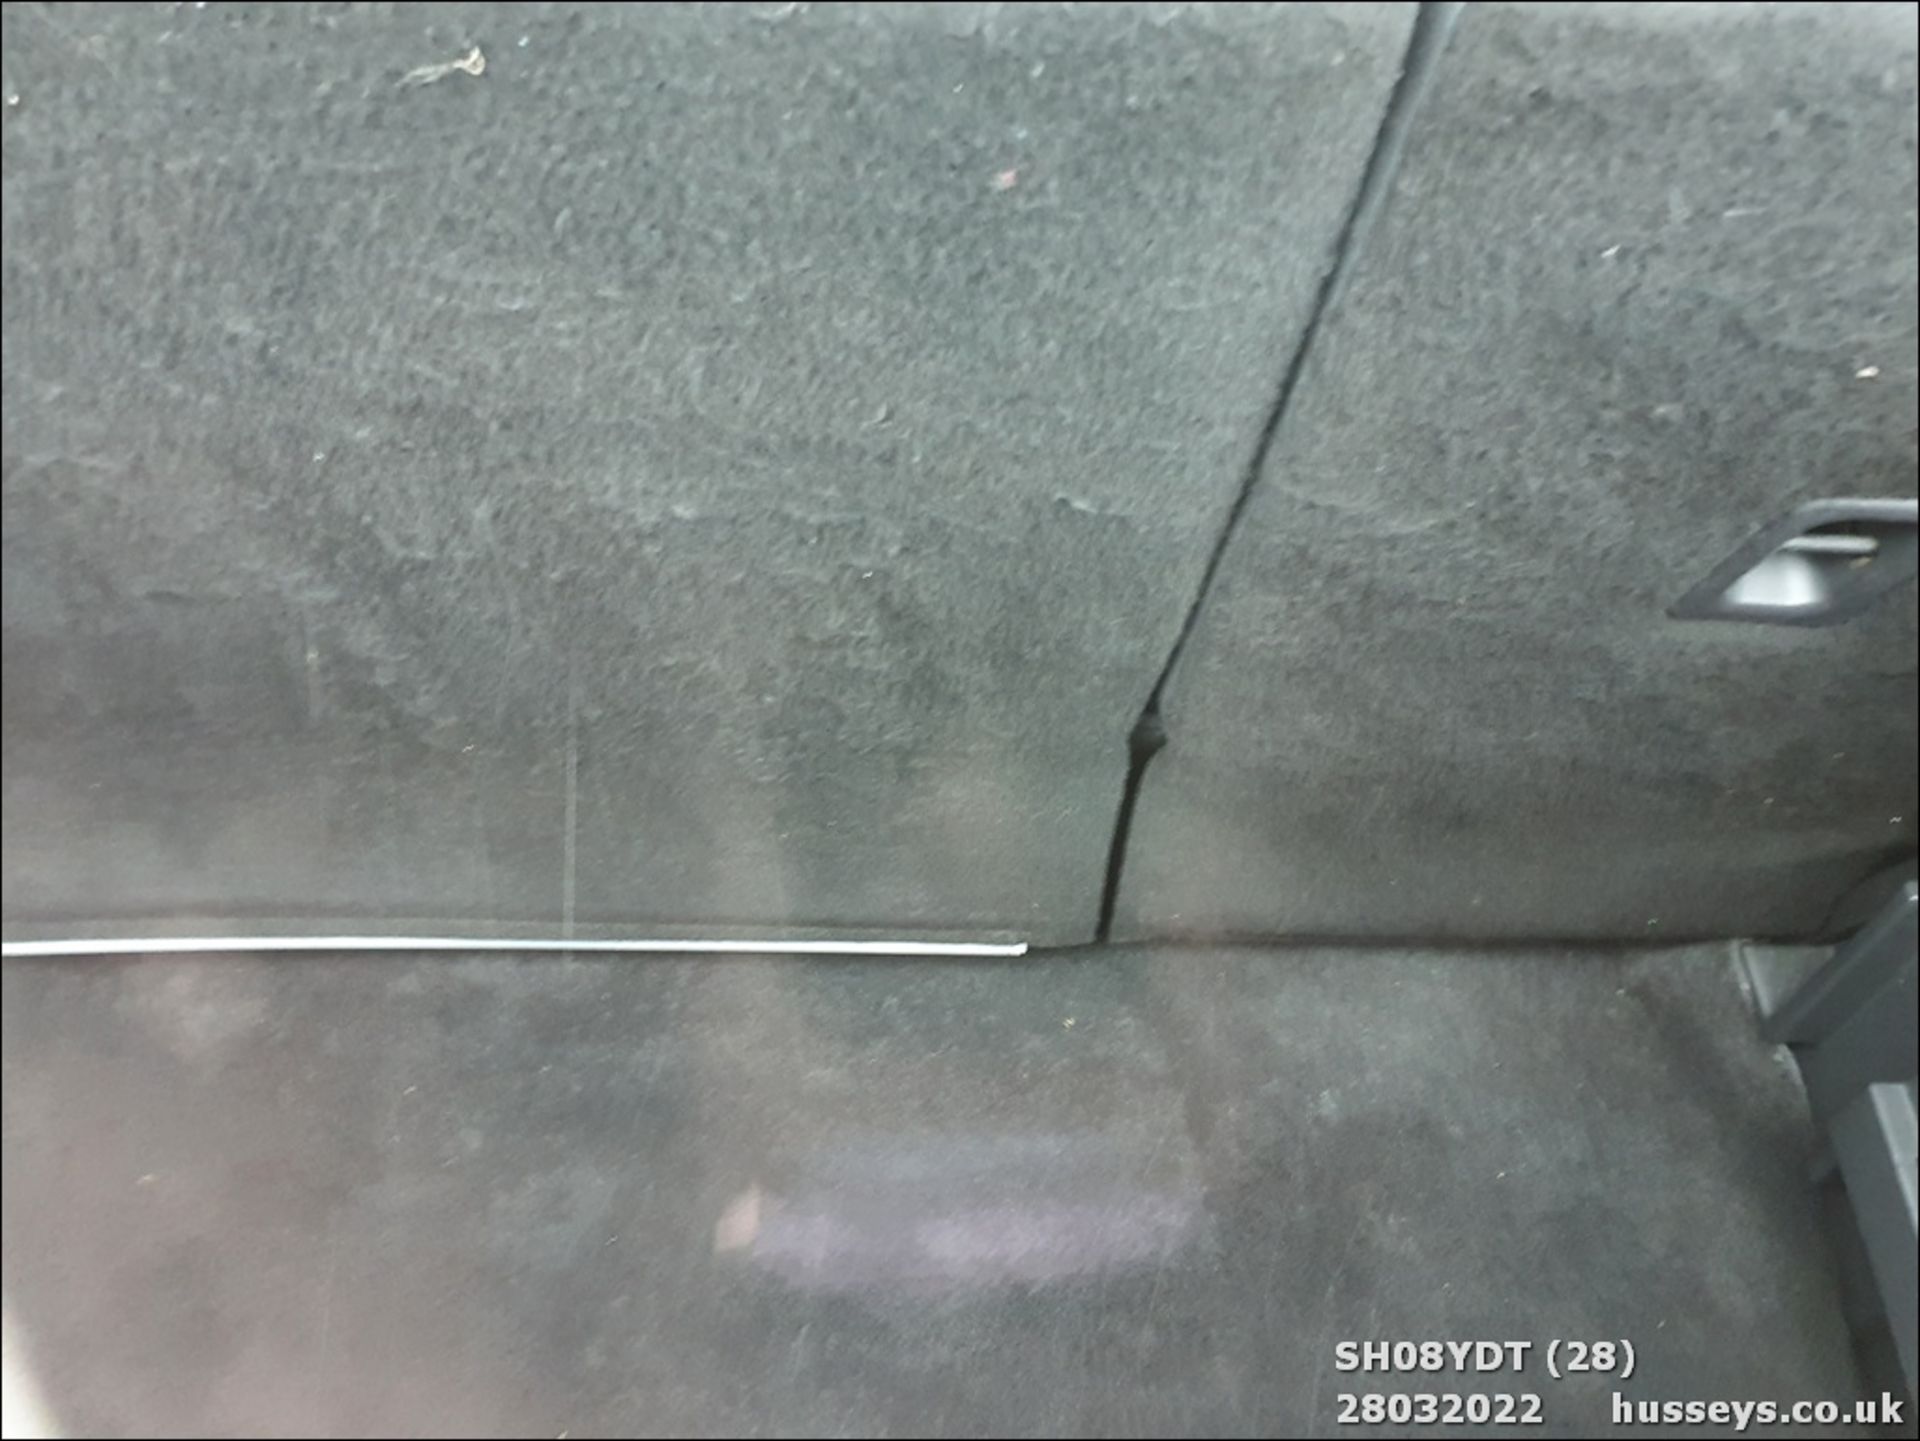 08/08 SUZUKI SWIFT DDIS - 1248cc 5dr Hatchback (Orange) - Image 40 of 40